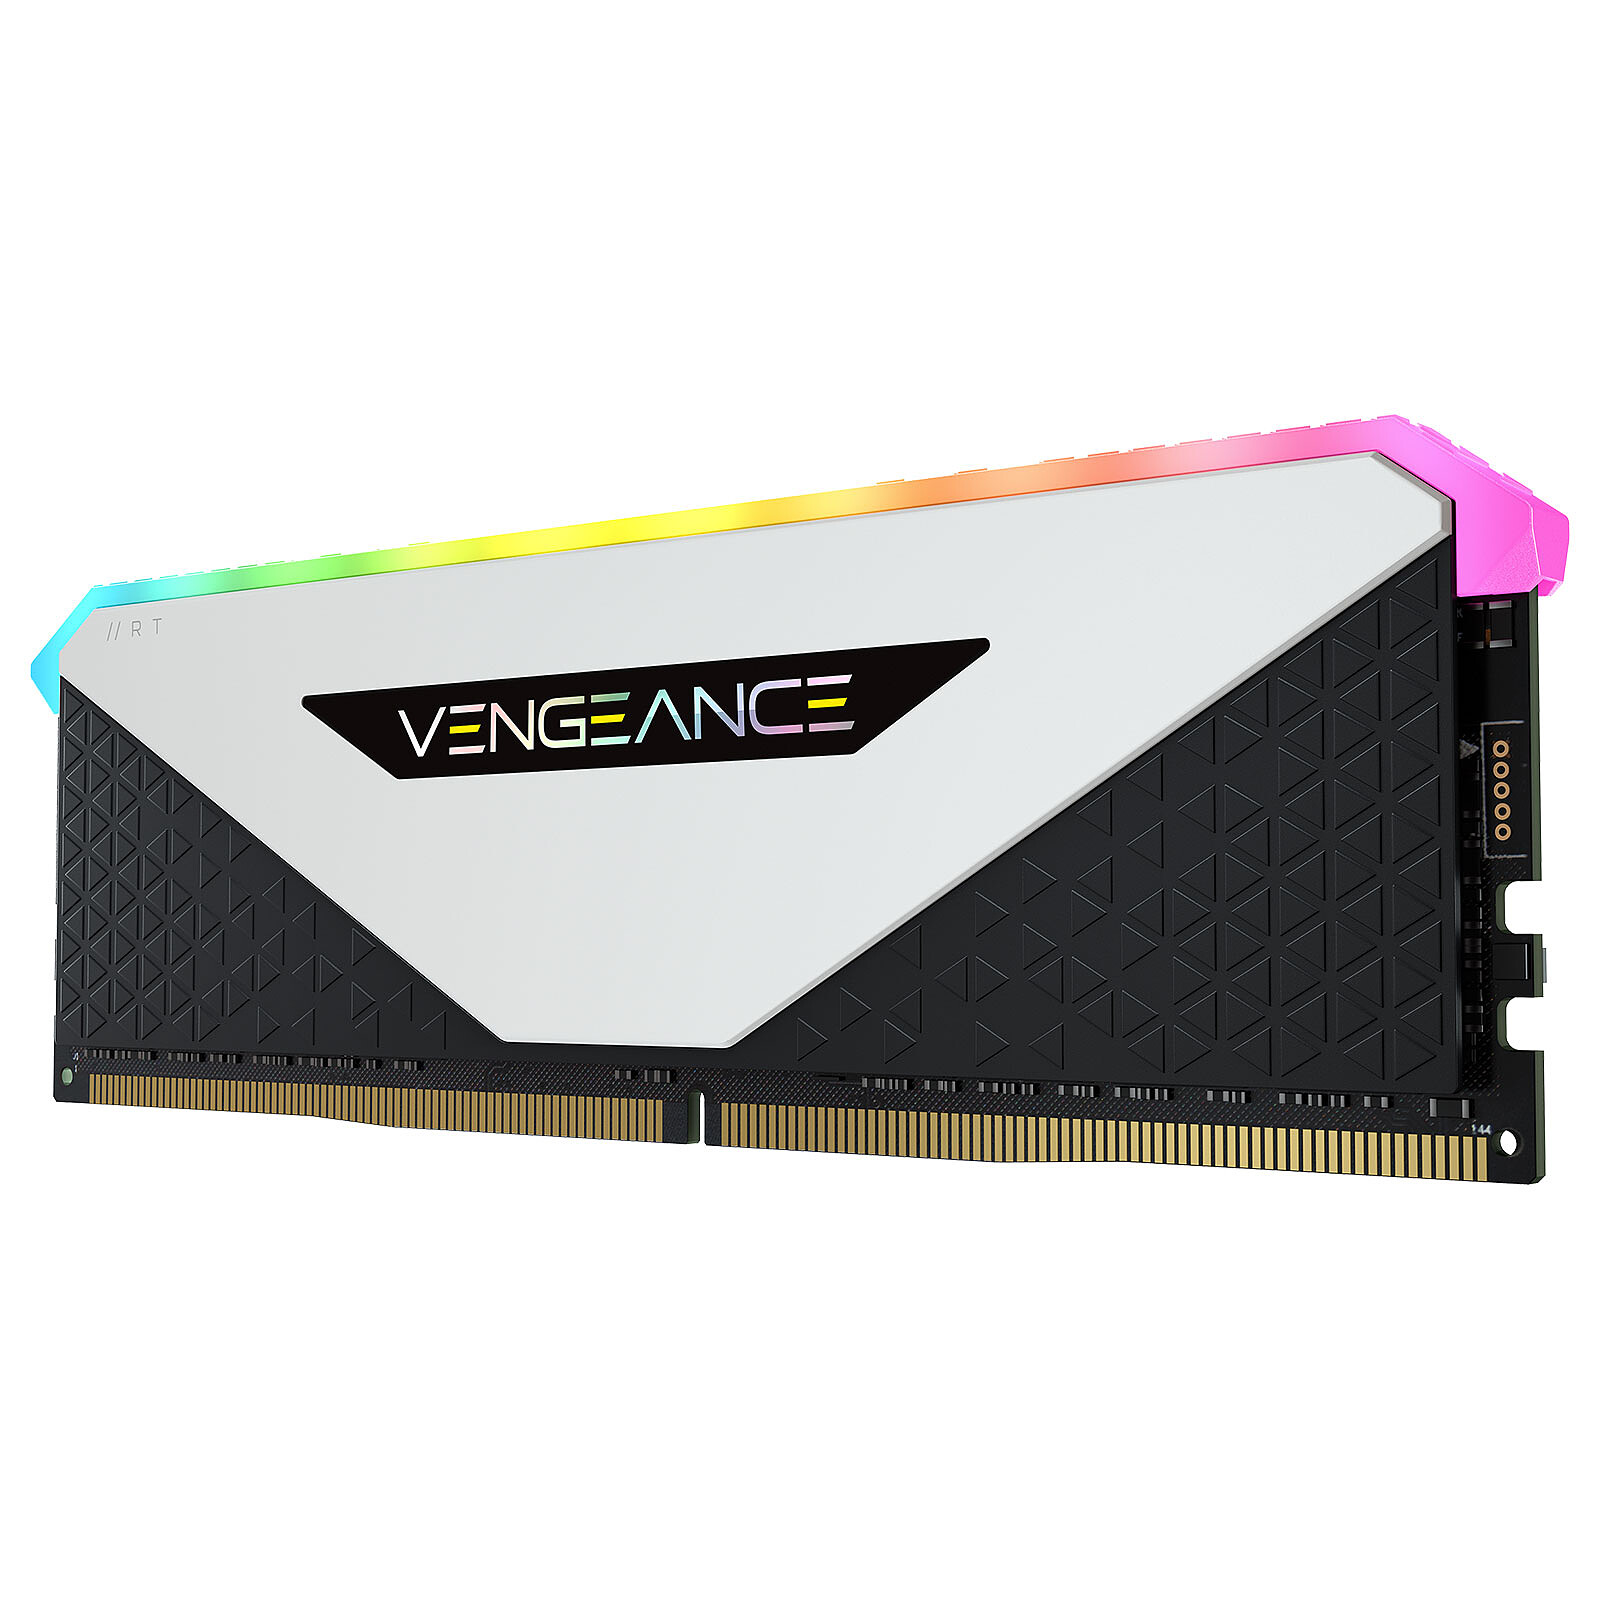 Corsair Vengeance RGB Pro SL 32Go (2x16Go) DDR4 3200MHz - Mémoire PC  Corsair sur